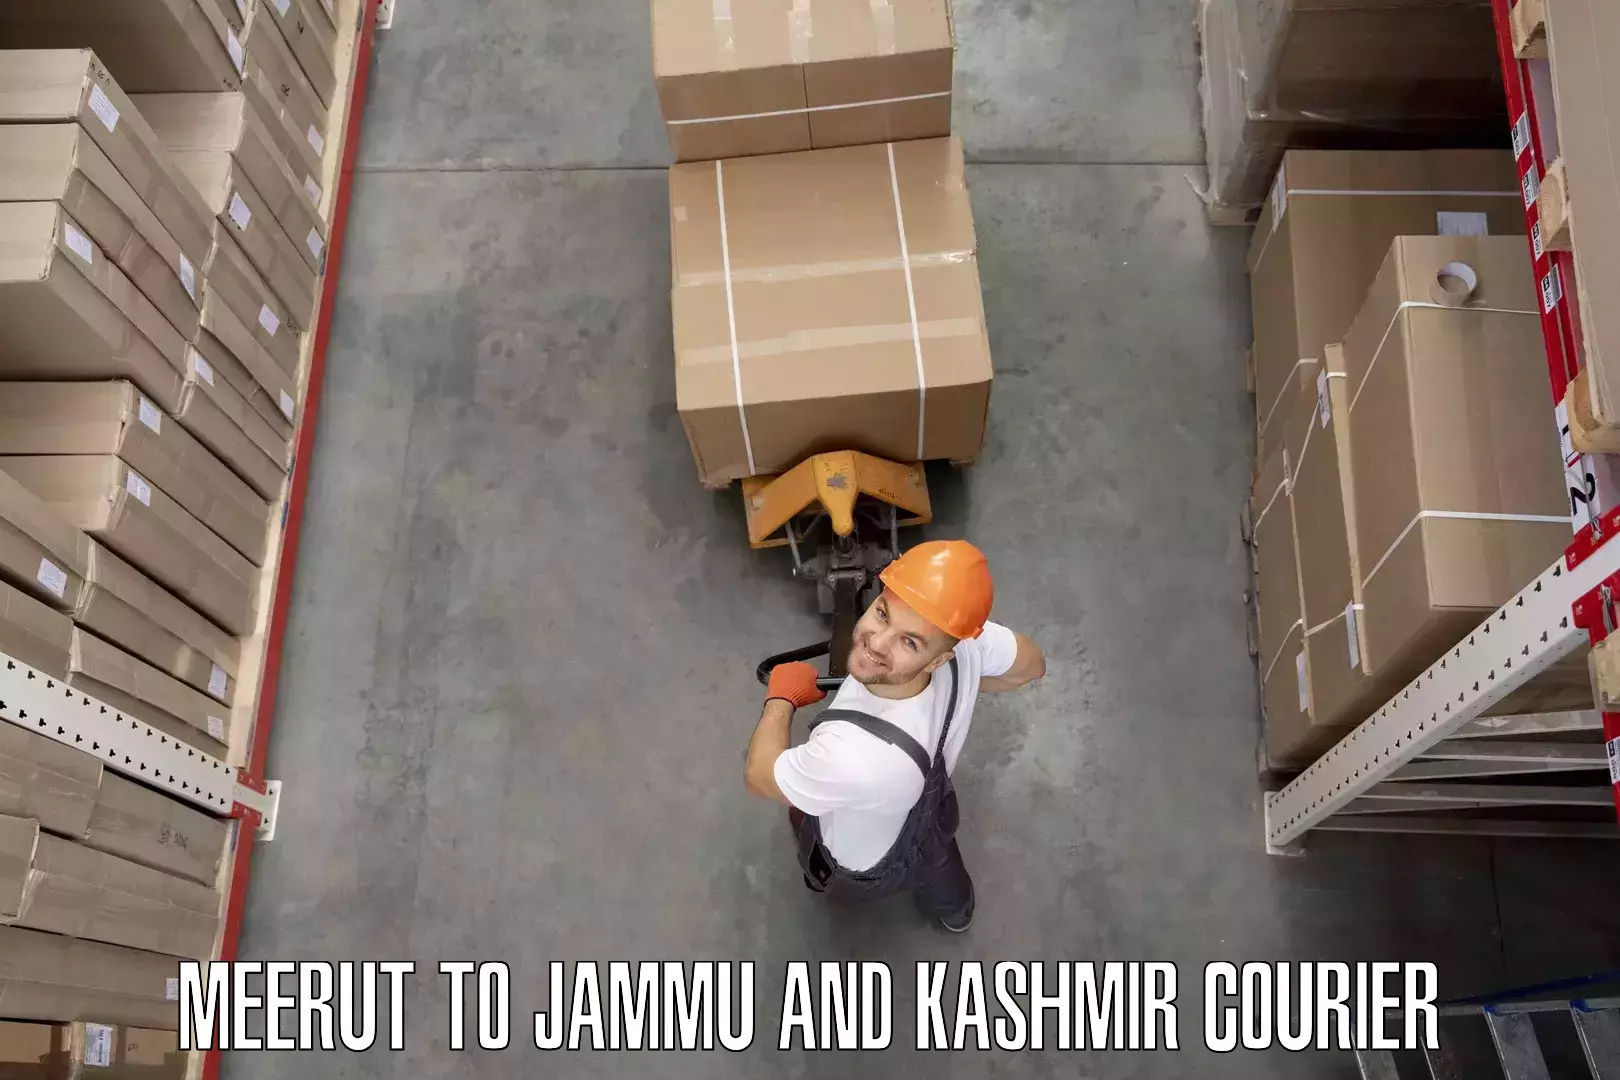 Furniture delivery service Meerut to Kargil